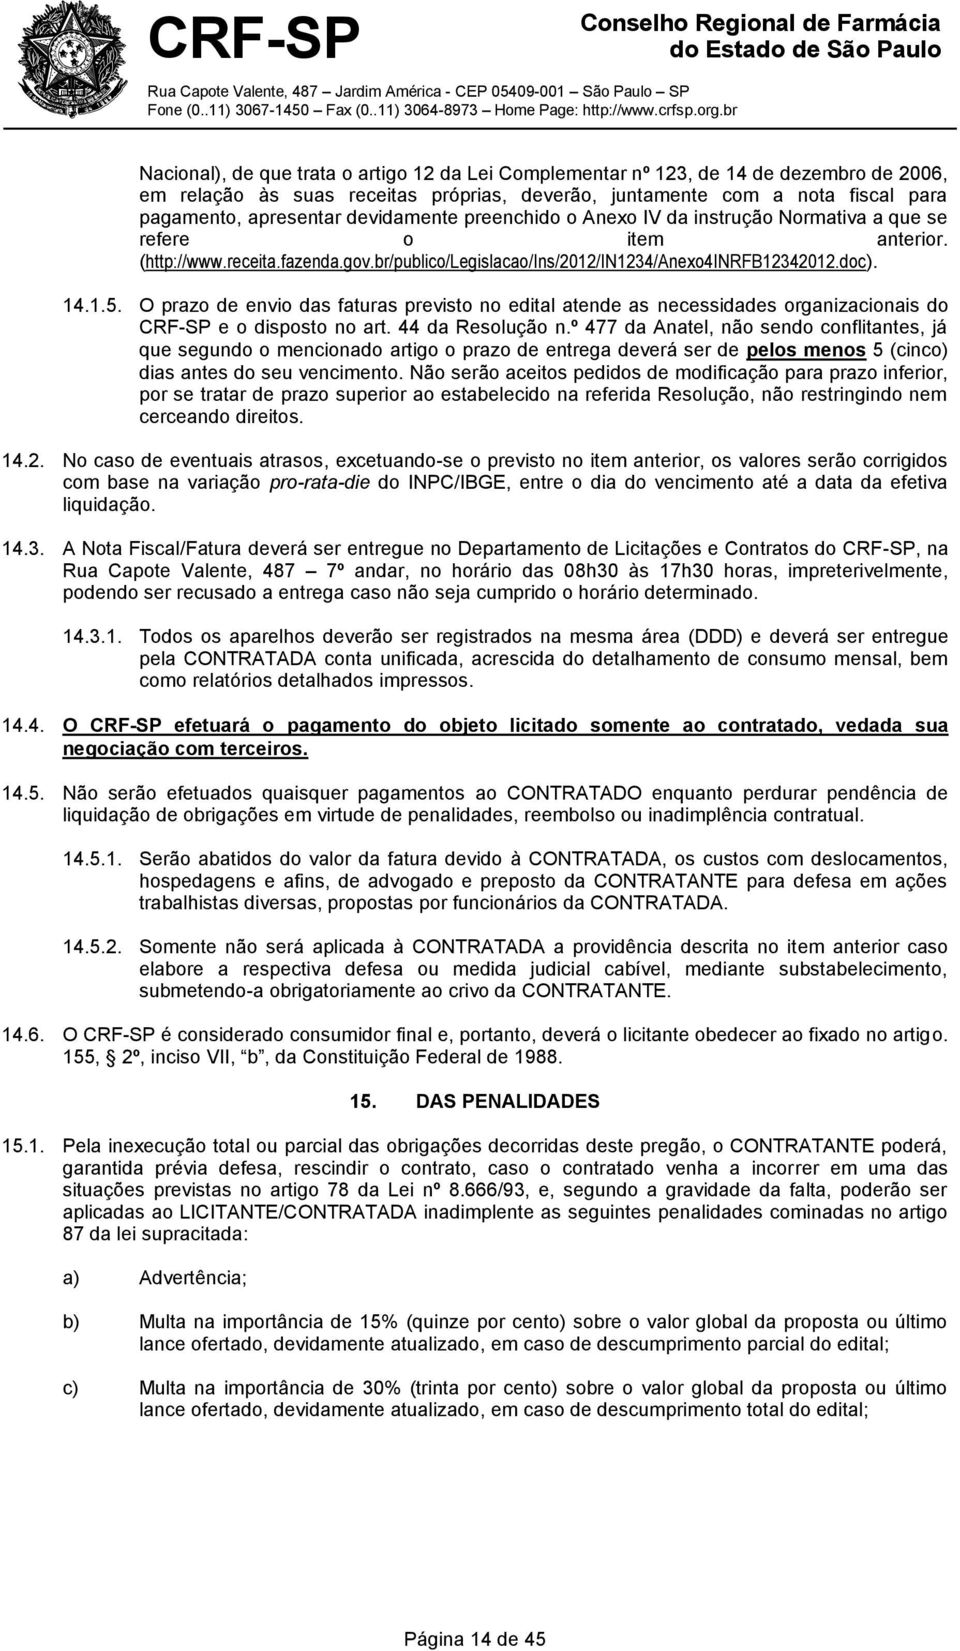 O prazo de envio das faturas previsto no edital atende as necessidades organizacionais do CRF-SP e o disposto no art. 44 da Resolução n.